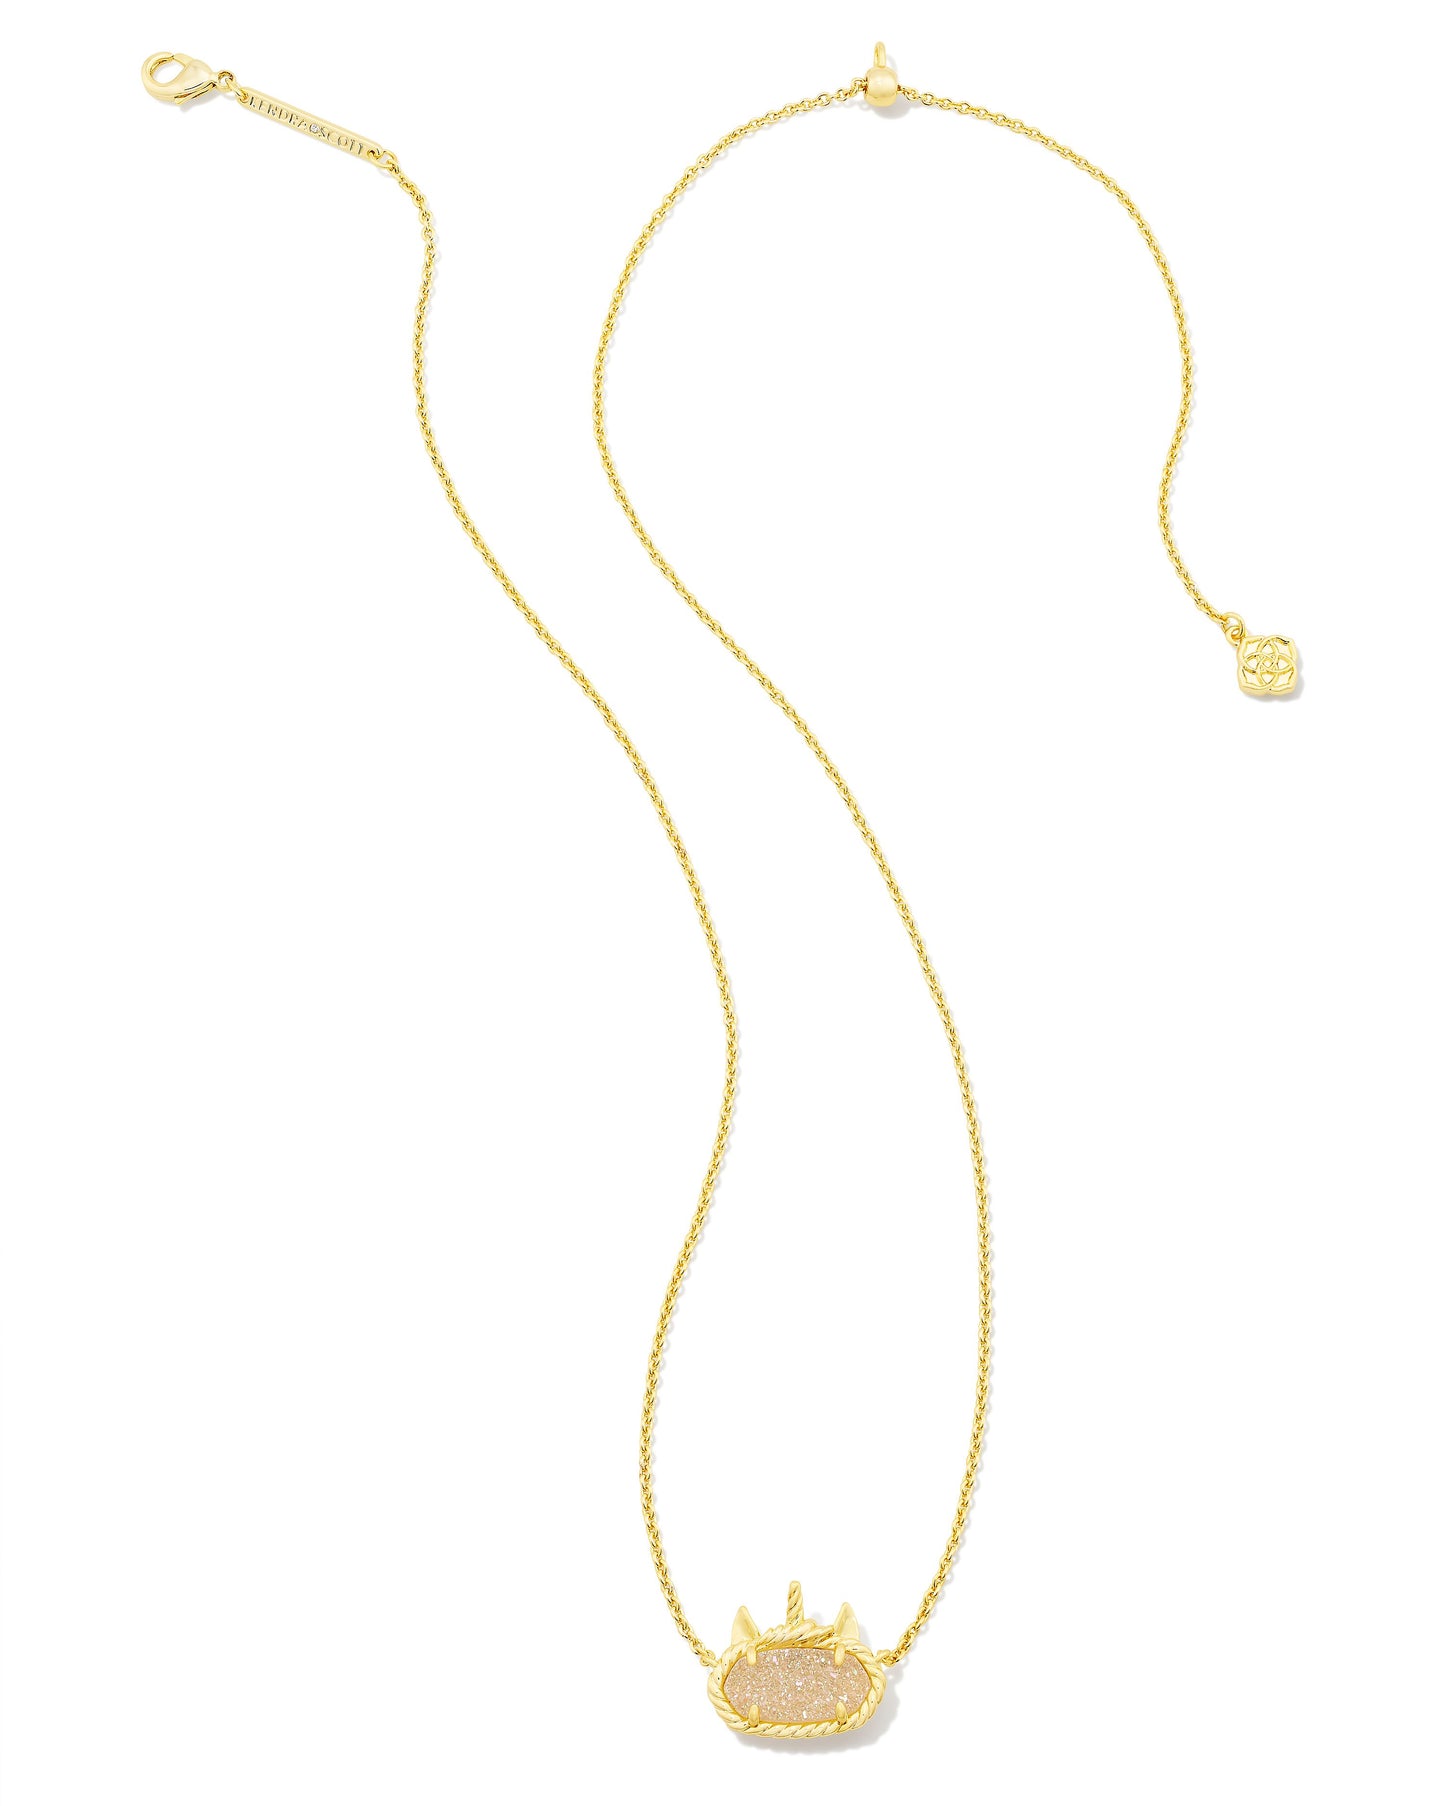 Elisa Unicorn Necklace | Gold & Iridescent Drusy